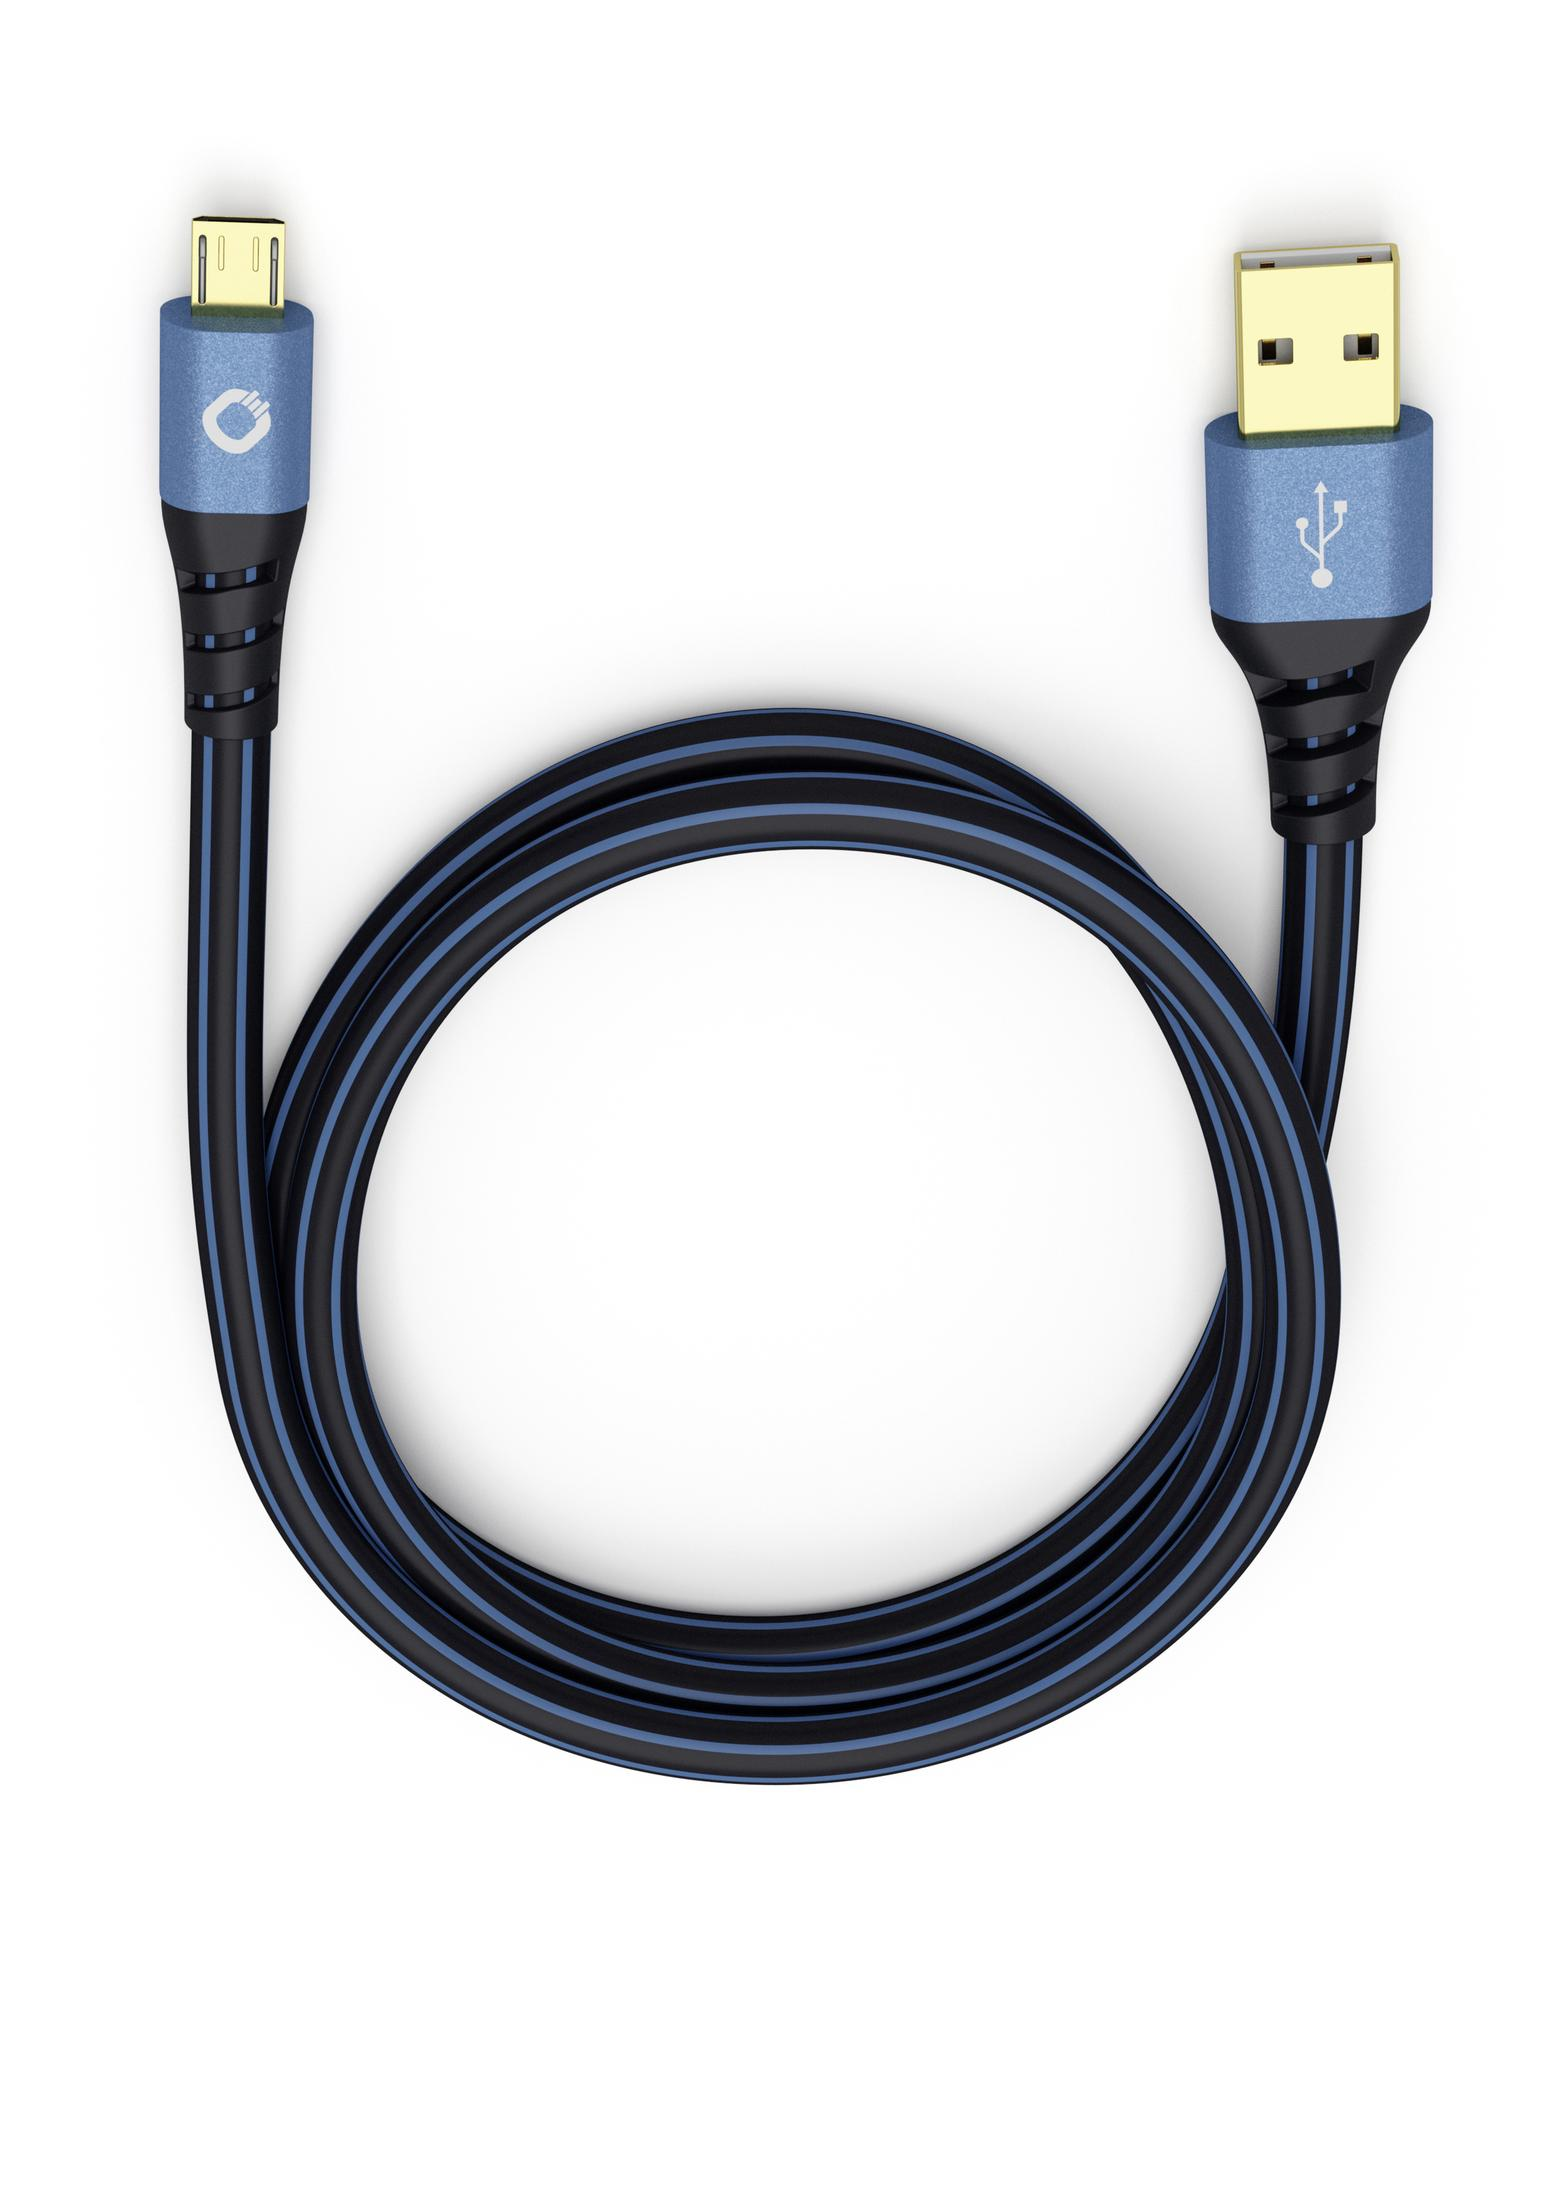 5 USB-A/MICRO-B 5,00M, OEHLBACH 9334 2.0 USB-Kabel, PLUS USB m